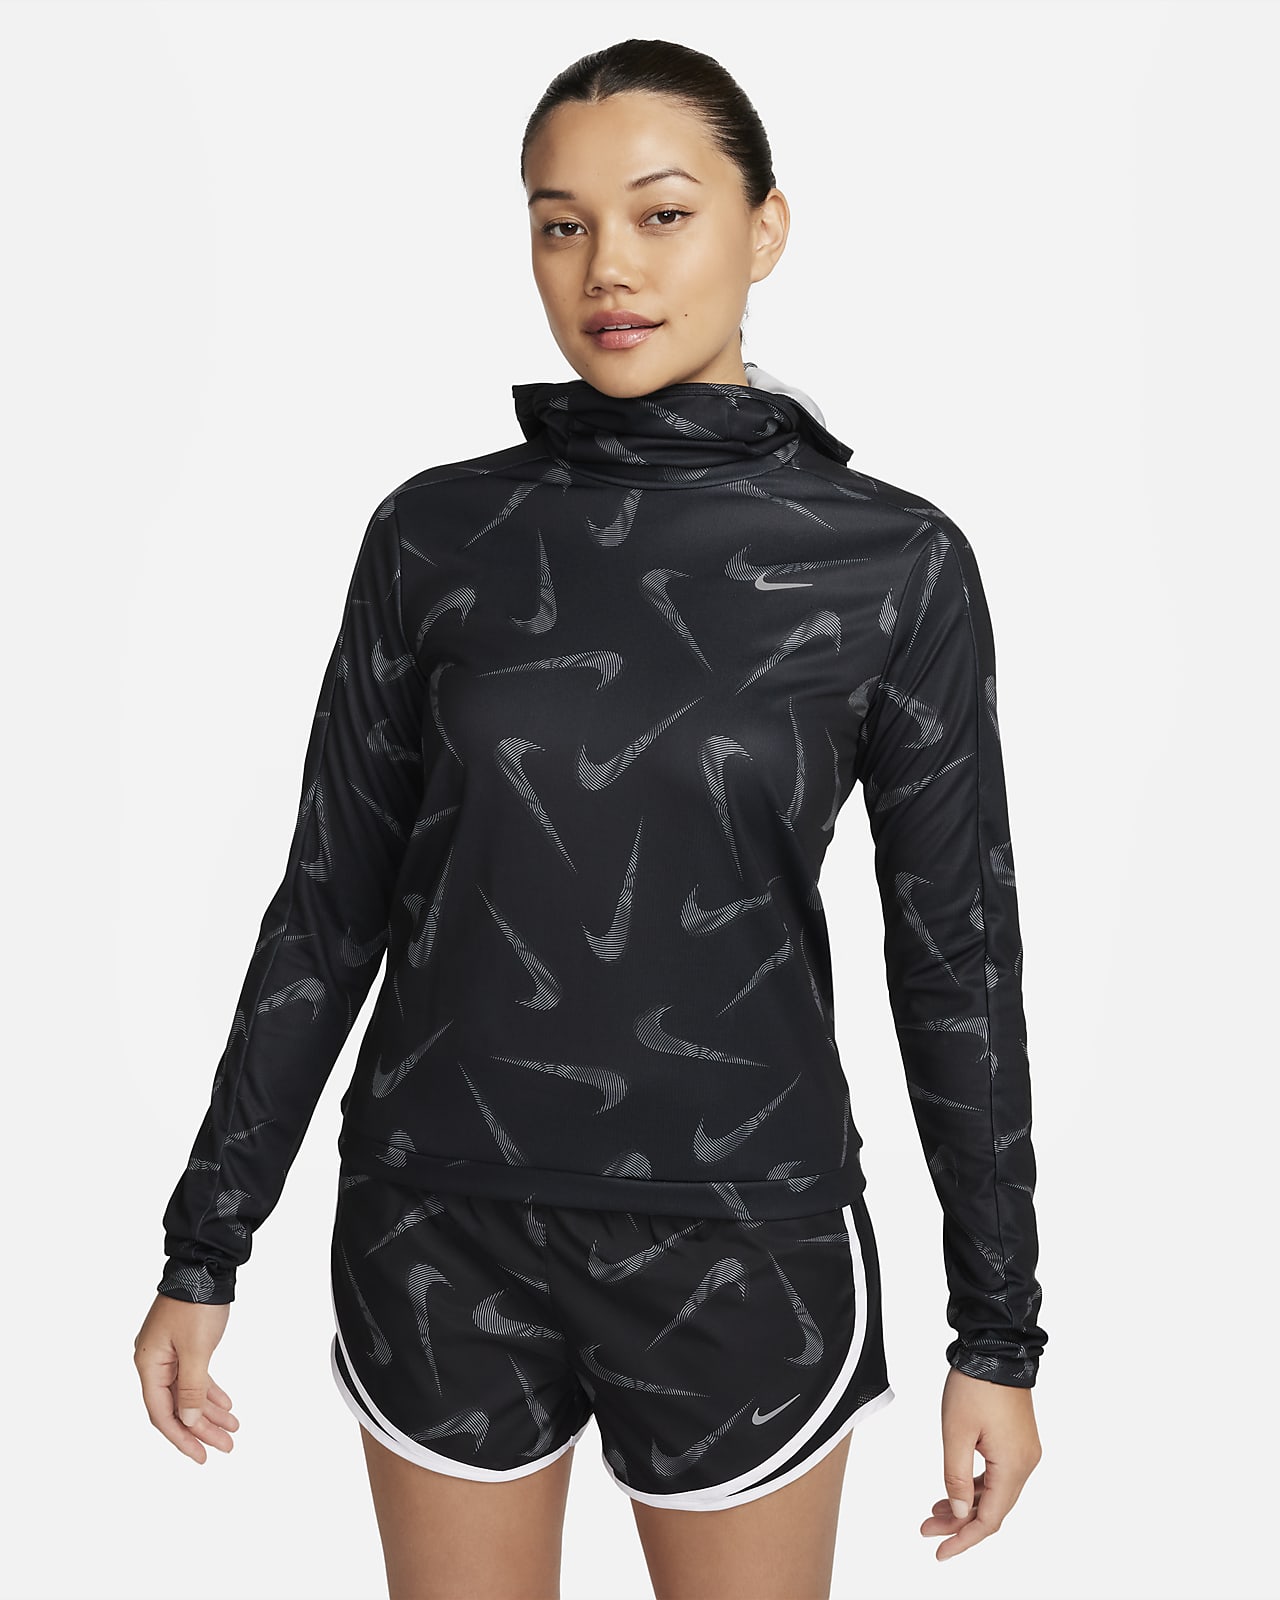 Printet Nike Swoosh-løbejakke med hætte til kvinder